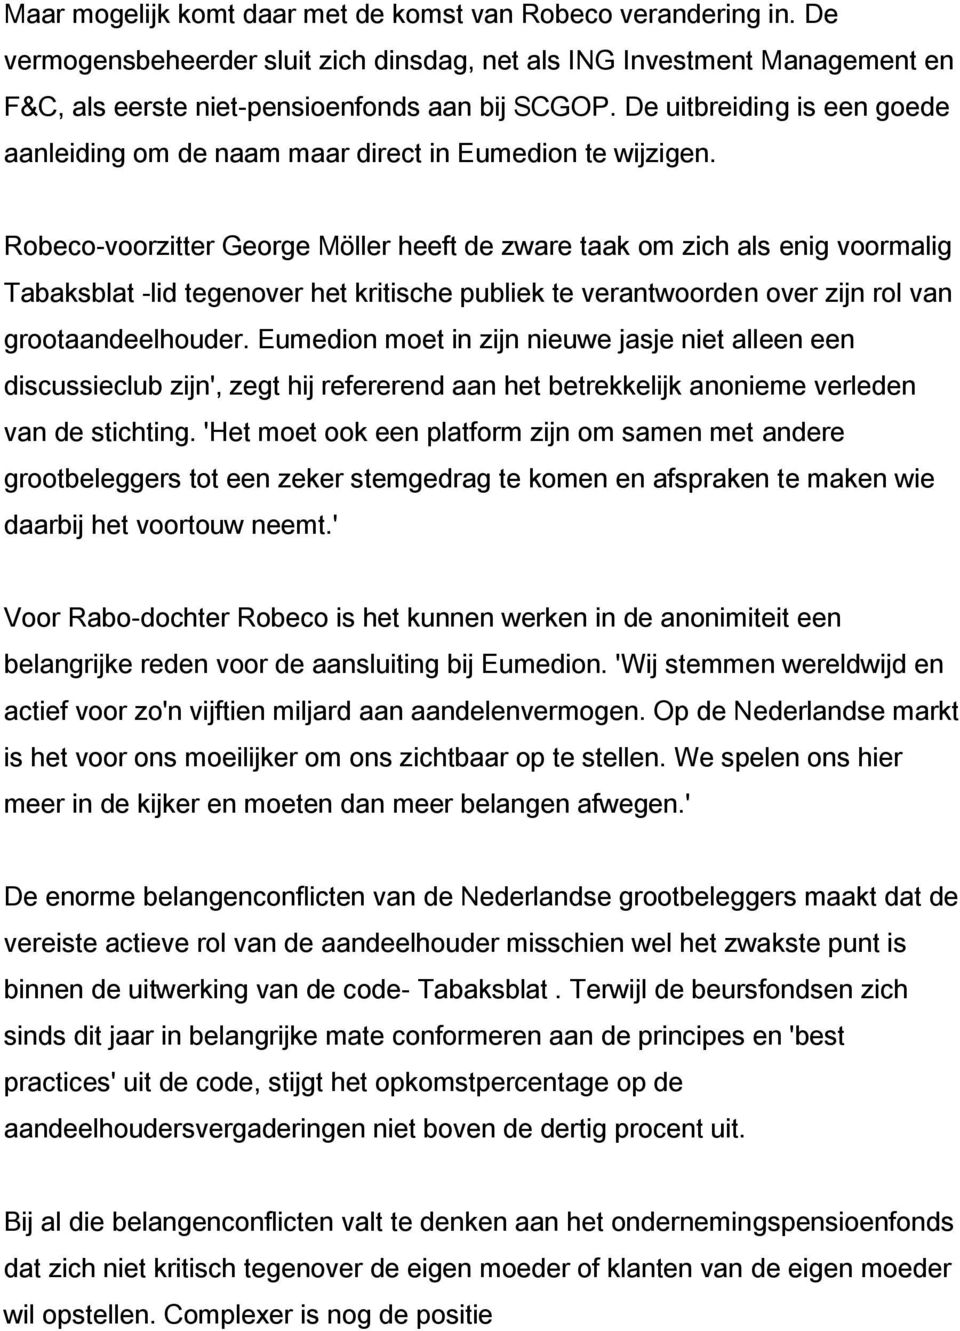 Robeco-voorzitter George Möller heeft de zware taak om zich als enig voormalig Tabaksblat -lid tegenover het kritische publiek te verantwoorden over zijn rol van grootaandeelhouder.